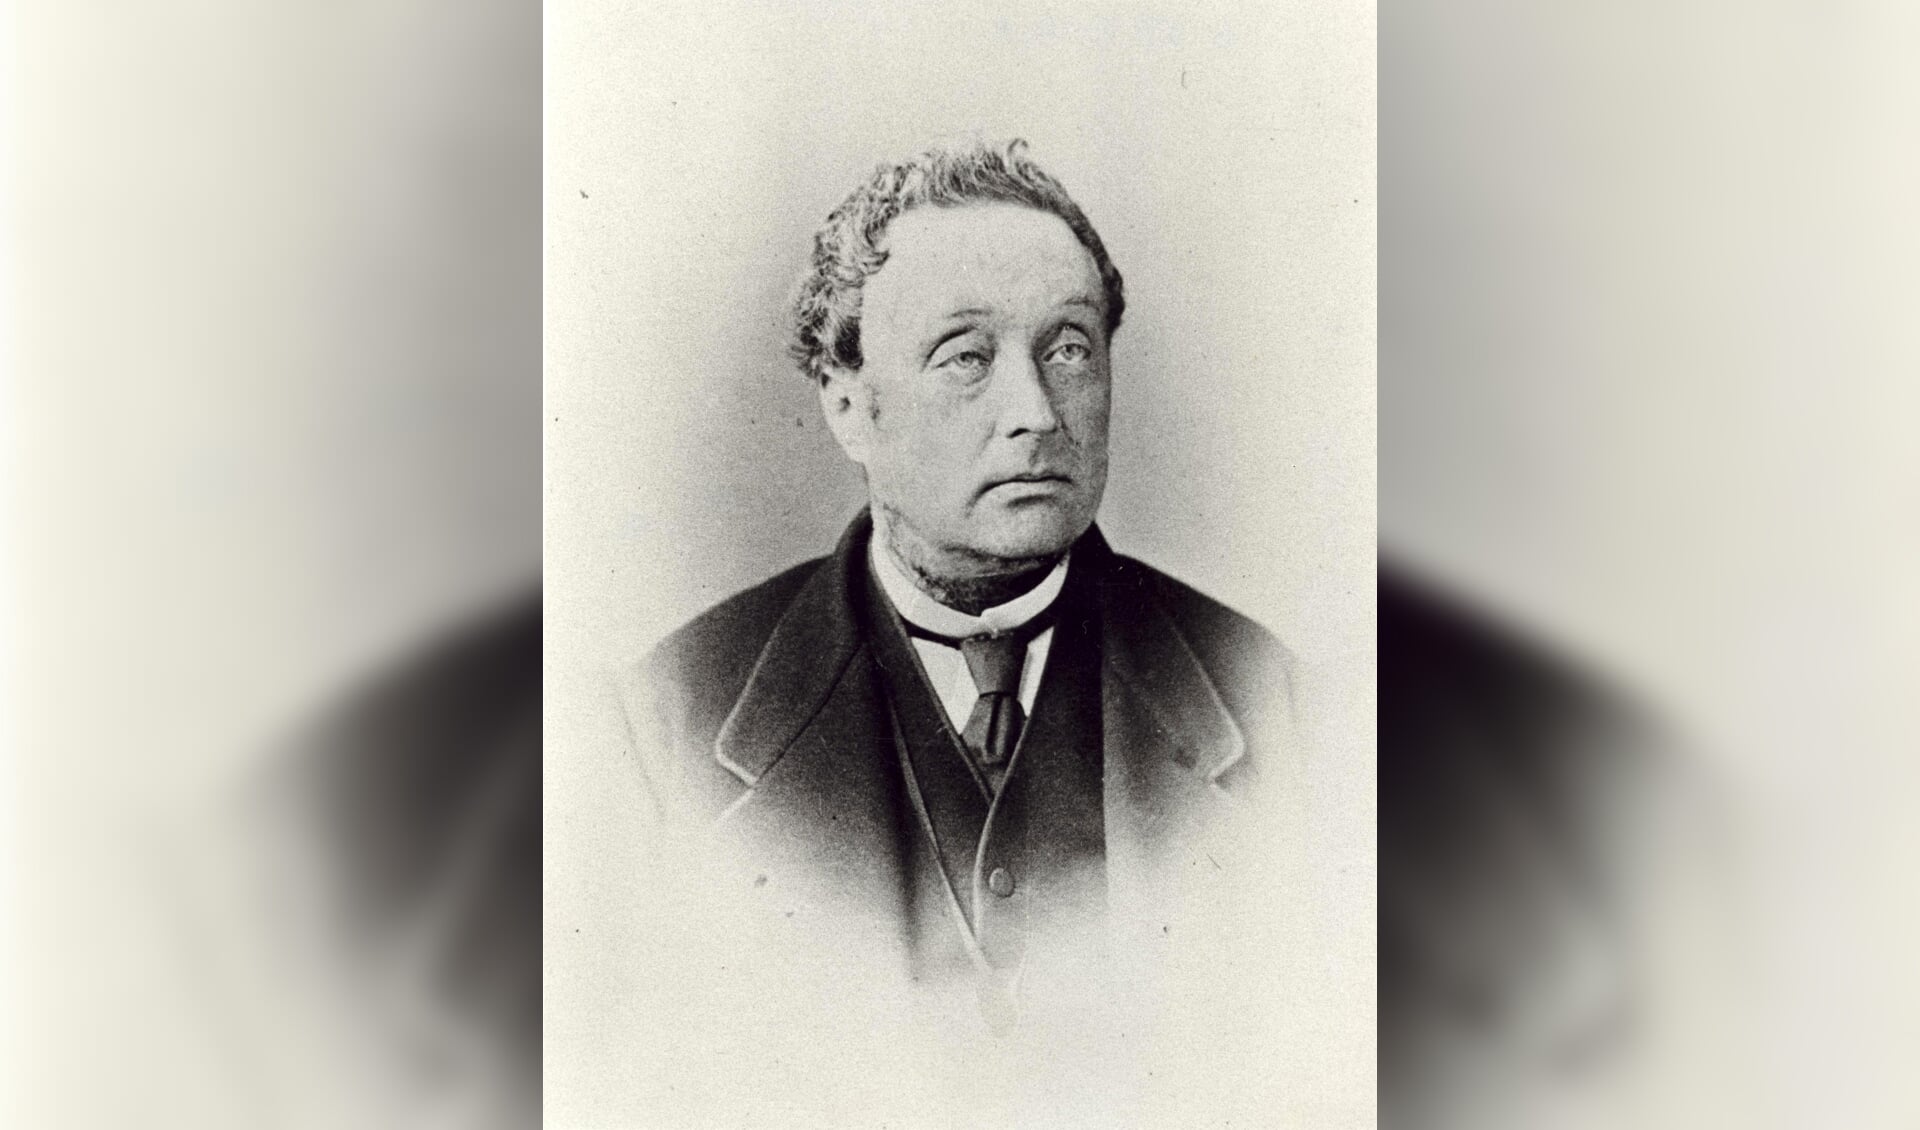 Burgemeester van Aken 1855 – 1885